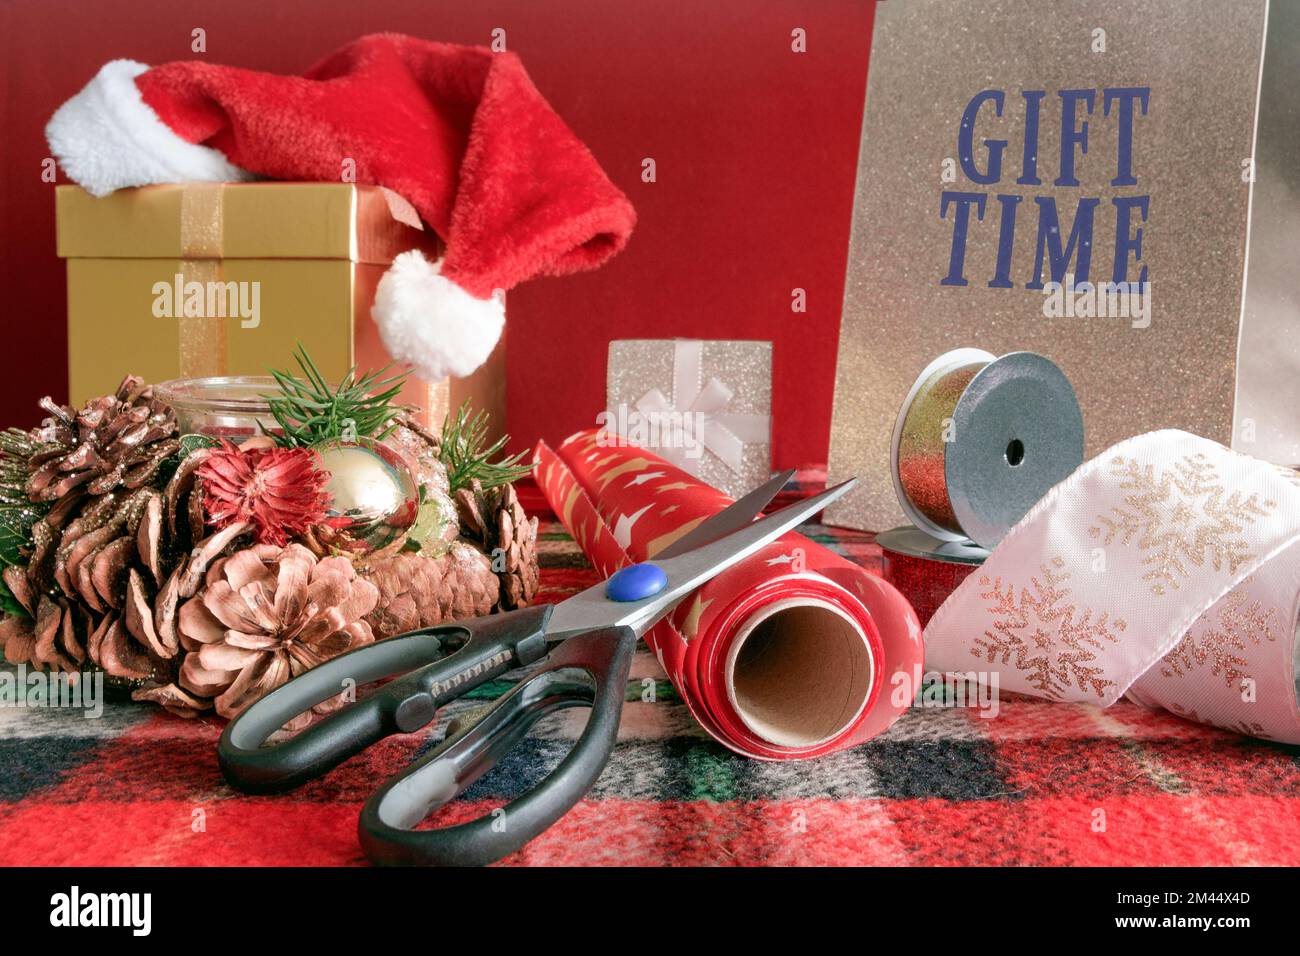 Geschenkschachteln, Geschenkpapier, schöne Taschen für Weihnachtsartikel  auf dem Tisch. Schere usw Stockfotografie - Alamy